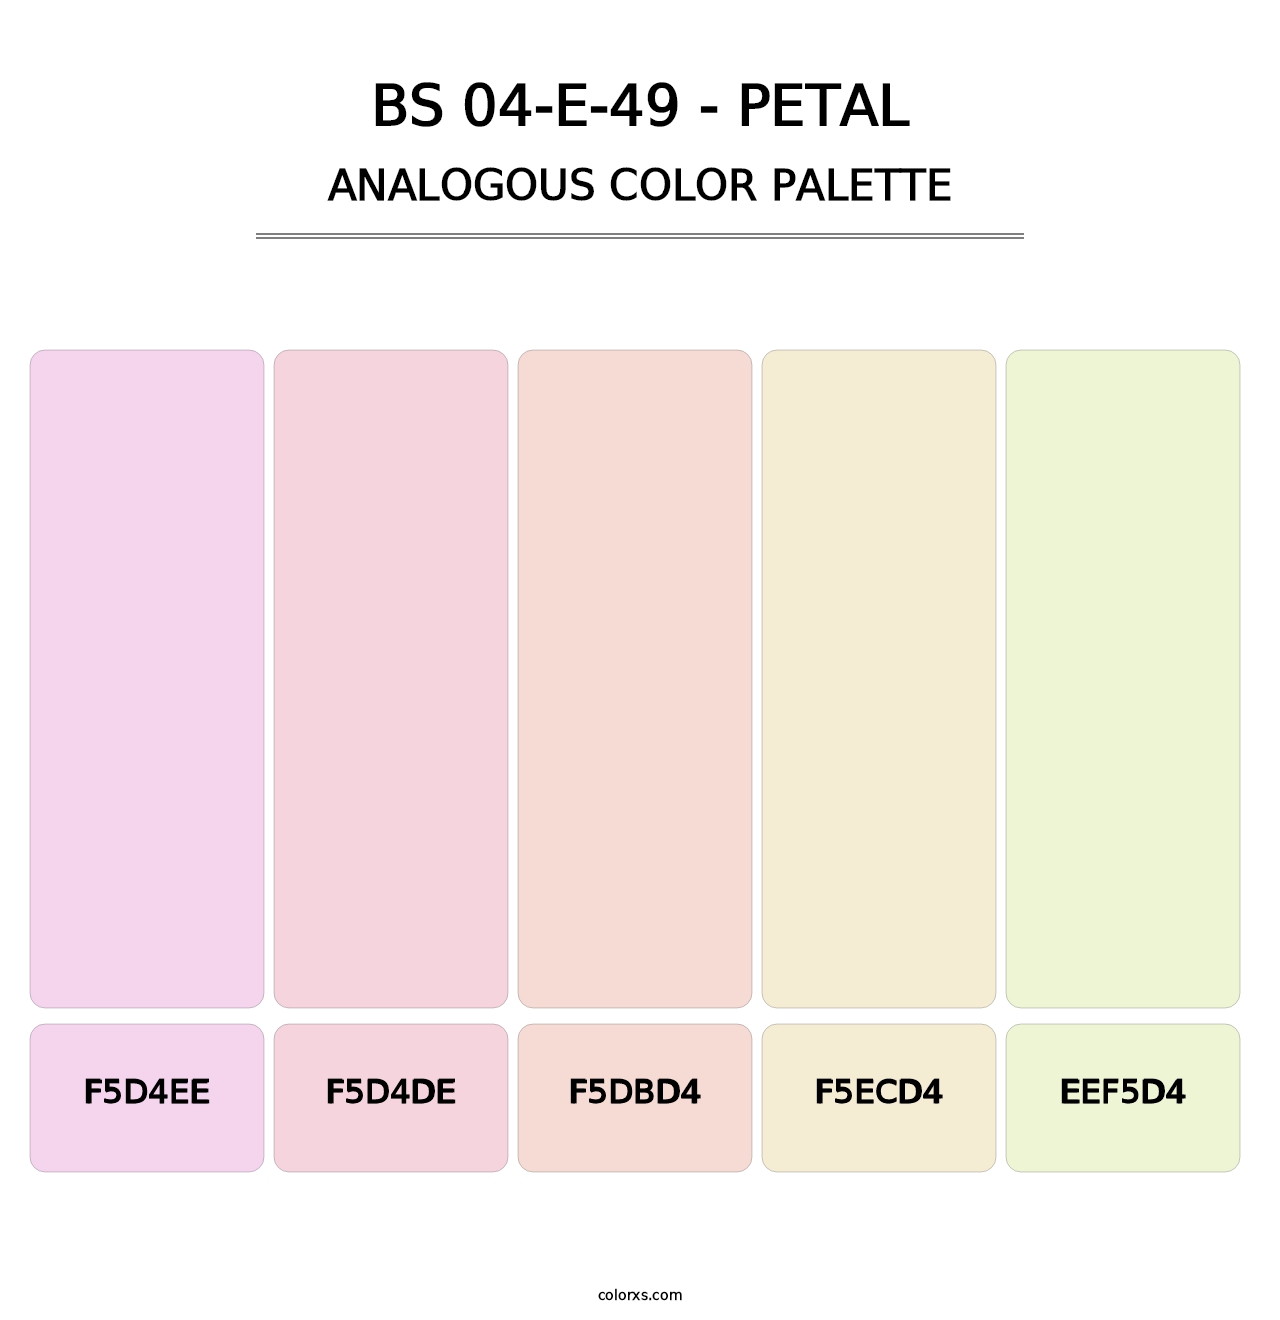 BS 04-E-49 - Petal - Analogous Color Palette